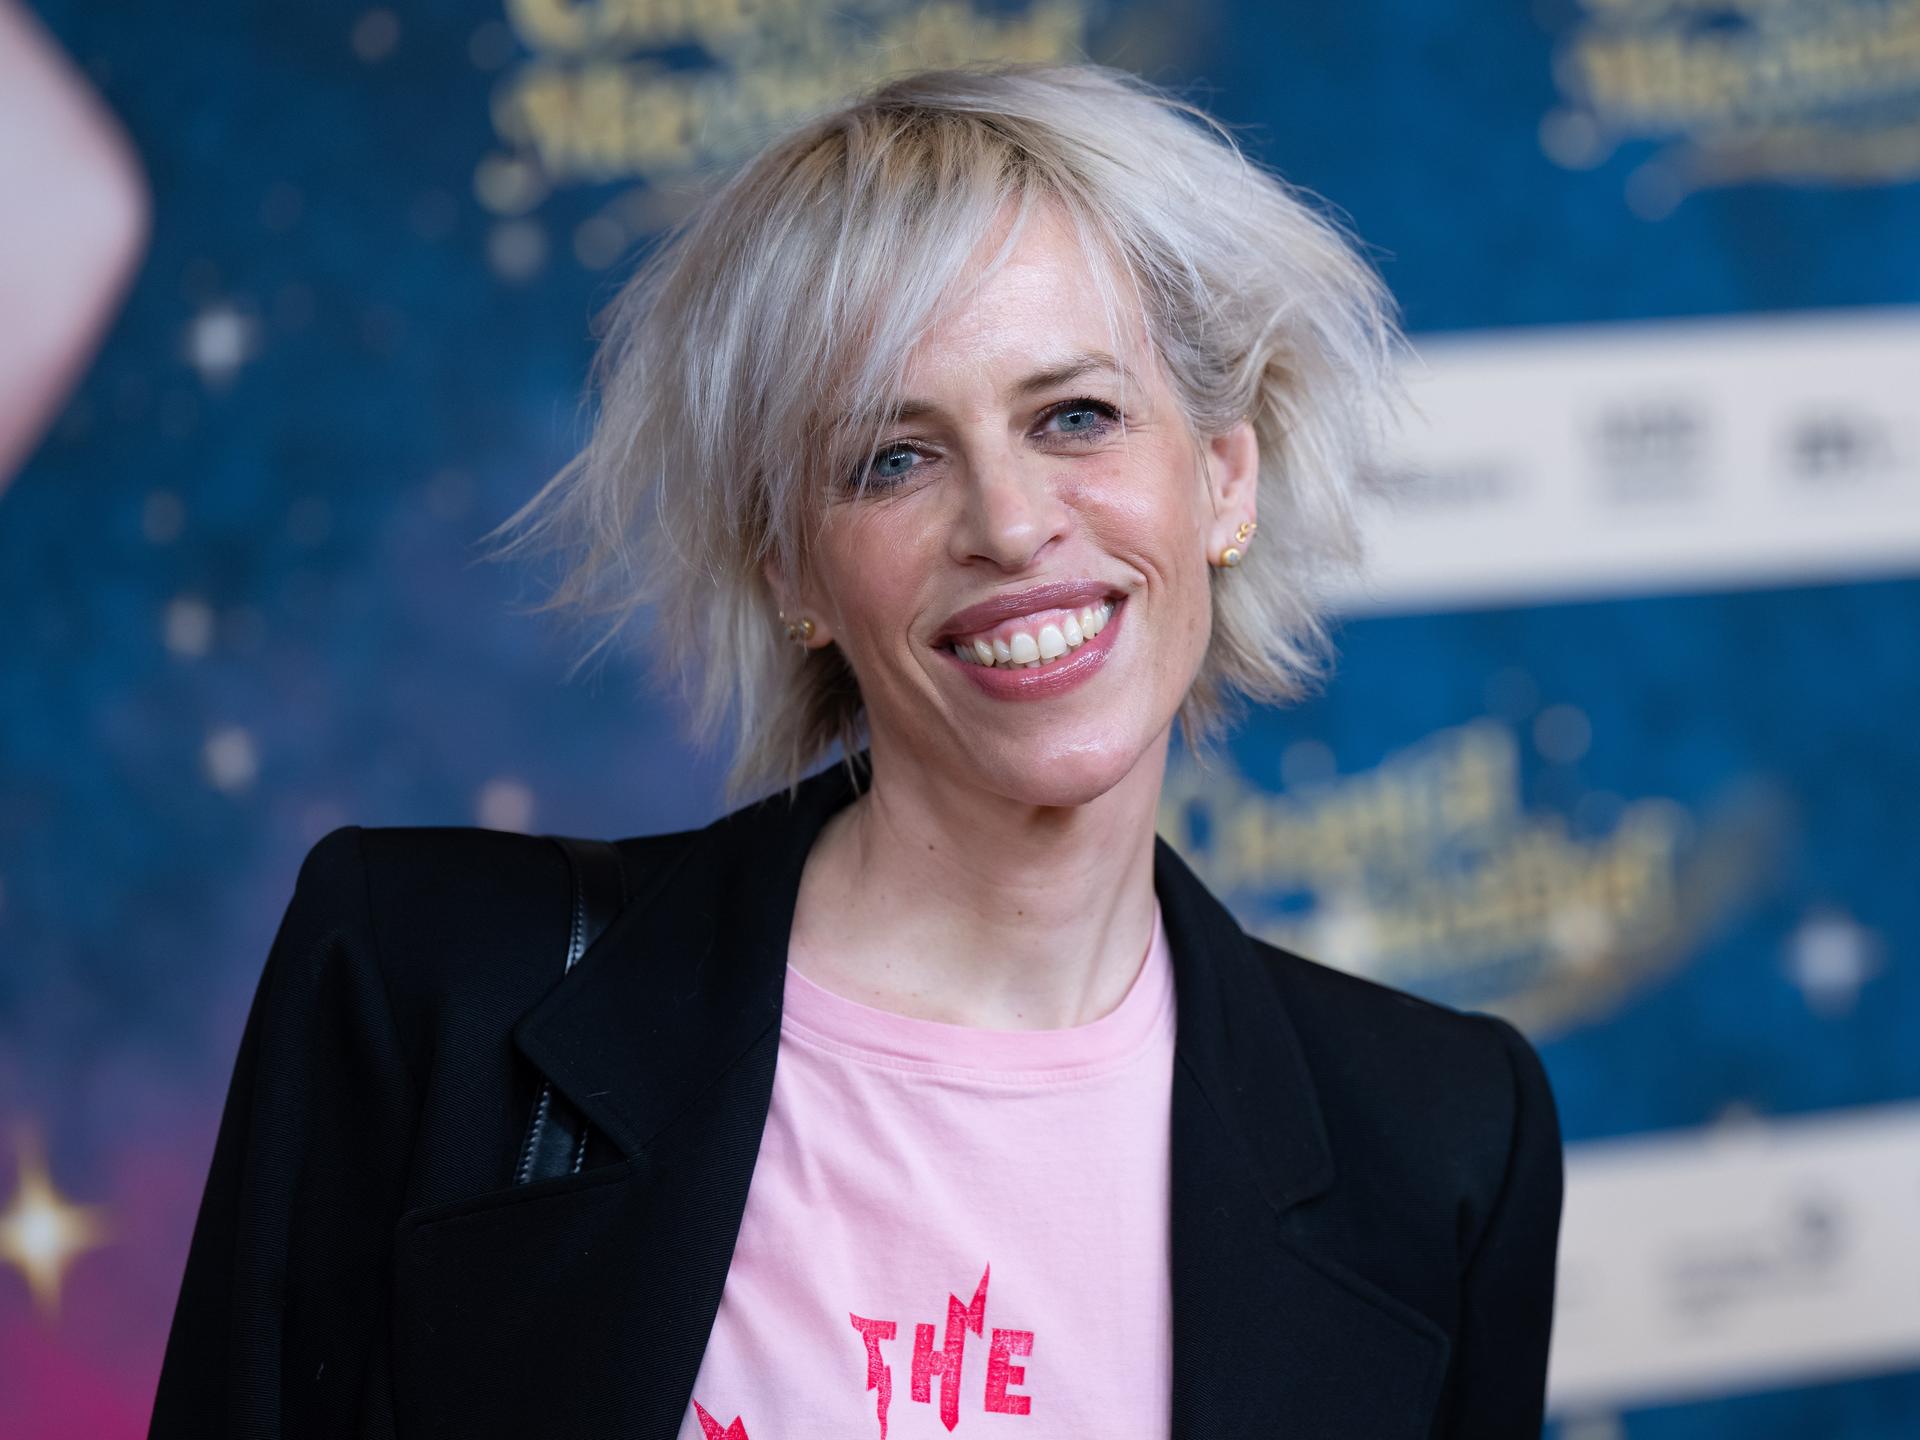 Katja Eichinger, Produzentin, kommt im Mathäser Filmpalast zu der Premiere des Films Chantal im Märchenland. Sie trägt ein rosa Shirt mit Aufdruck und eine schwarze Jacke.